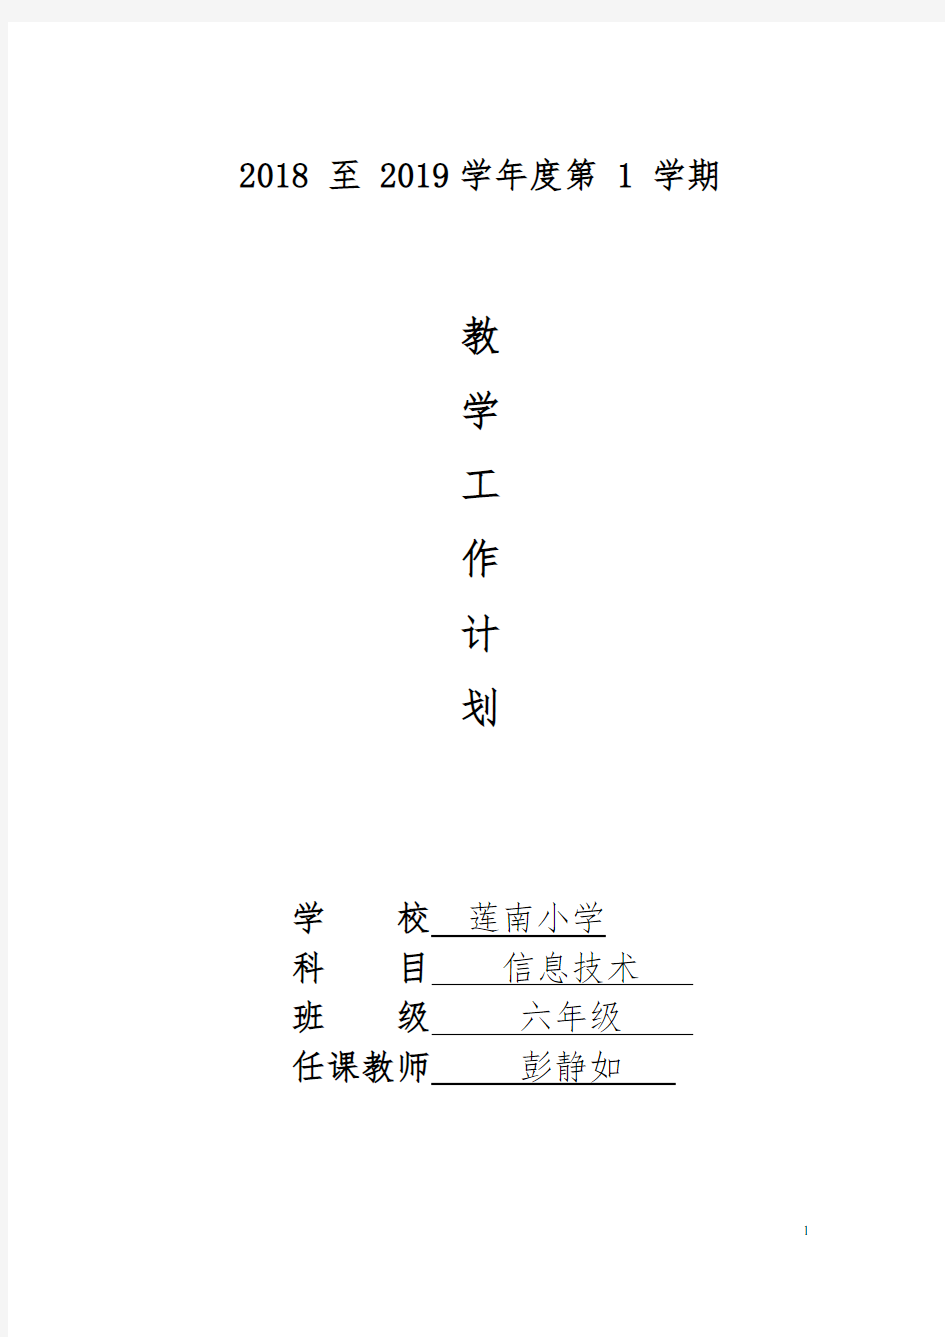 广东省小学课本信息技术2018-2019上学期第四册(上)教学计划